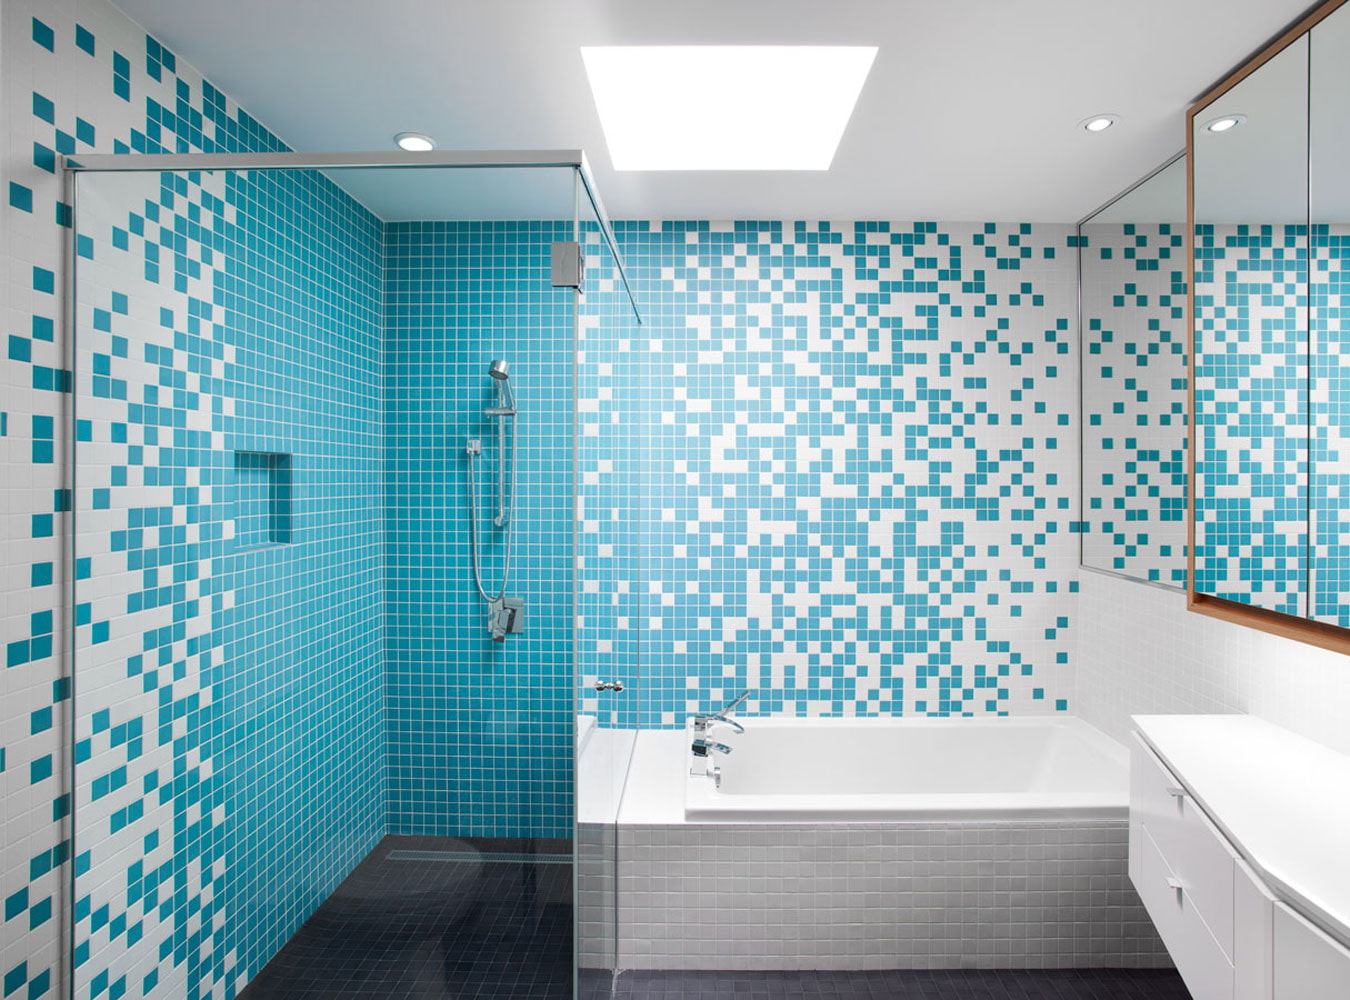 мозаичная плитка в интерьере ванной